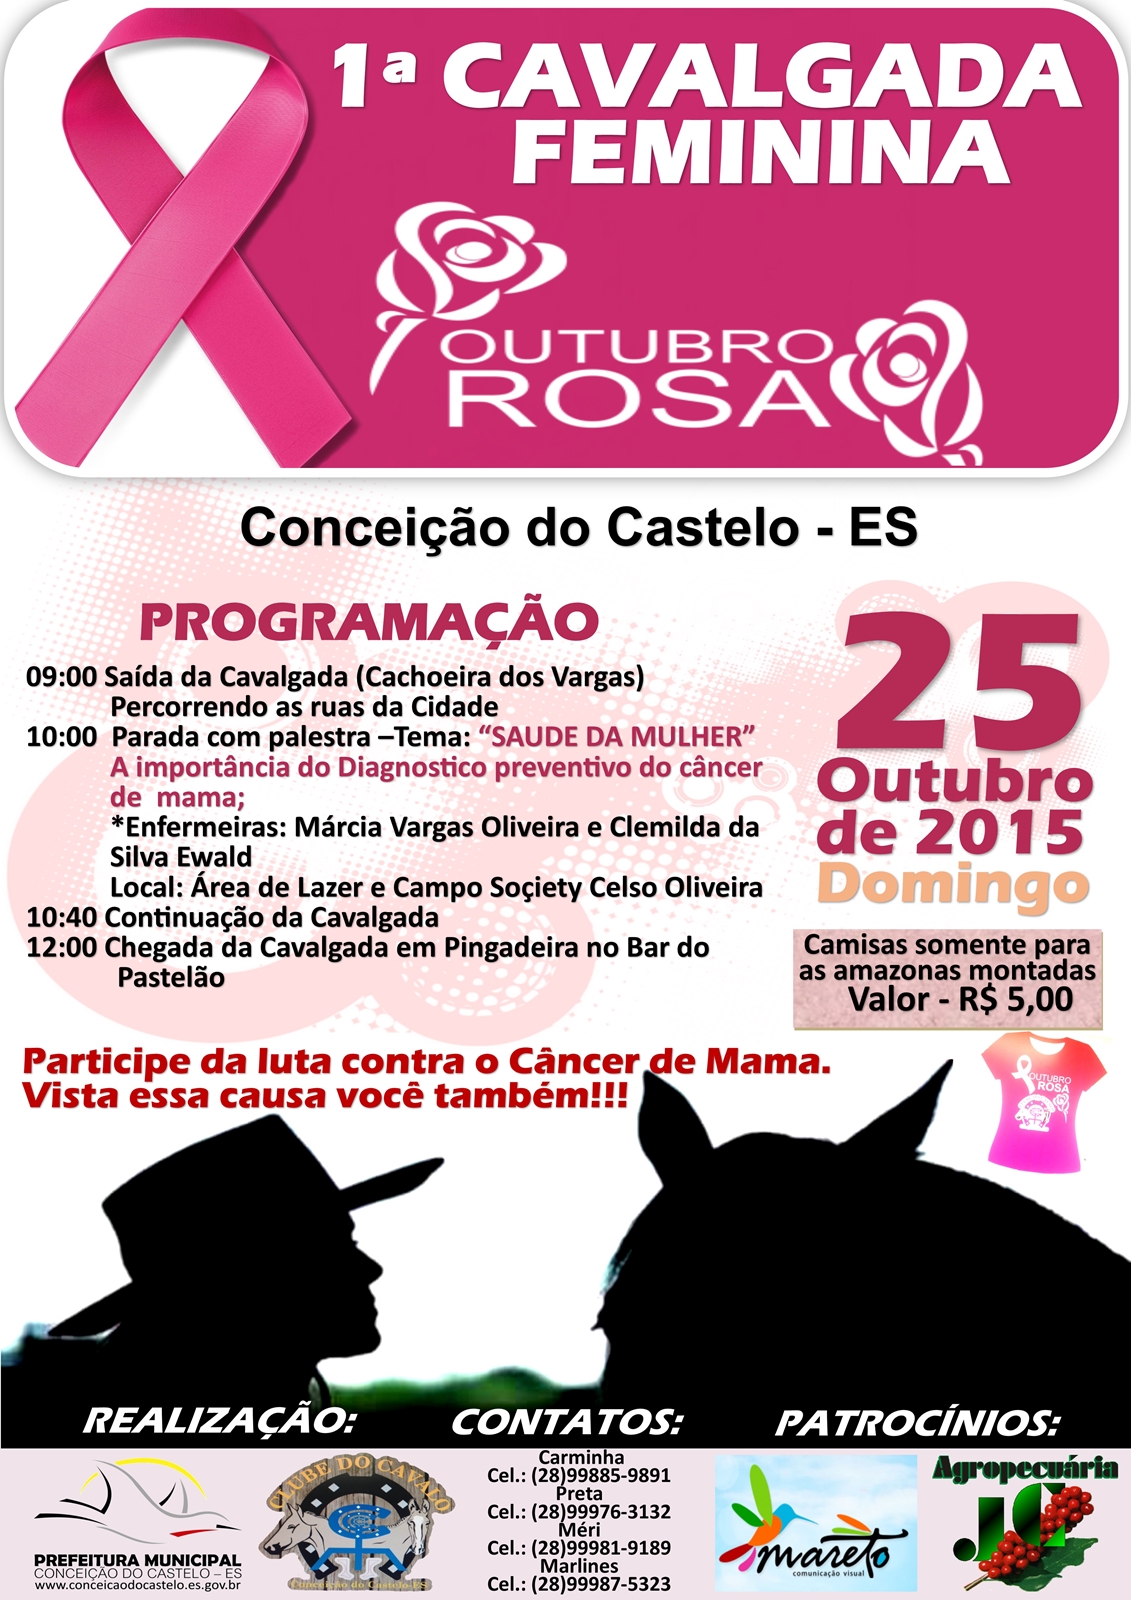 Conceição do Castelo promove 1ª Cavalgada Feminina Outubro Rosa no dia 25 de outubro